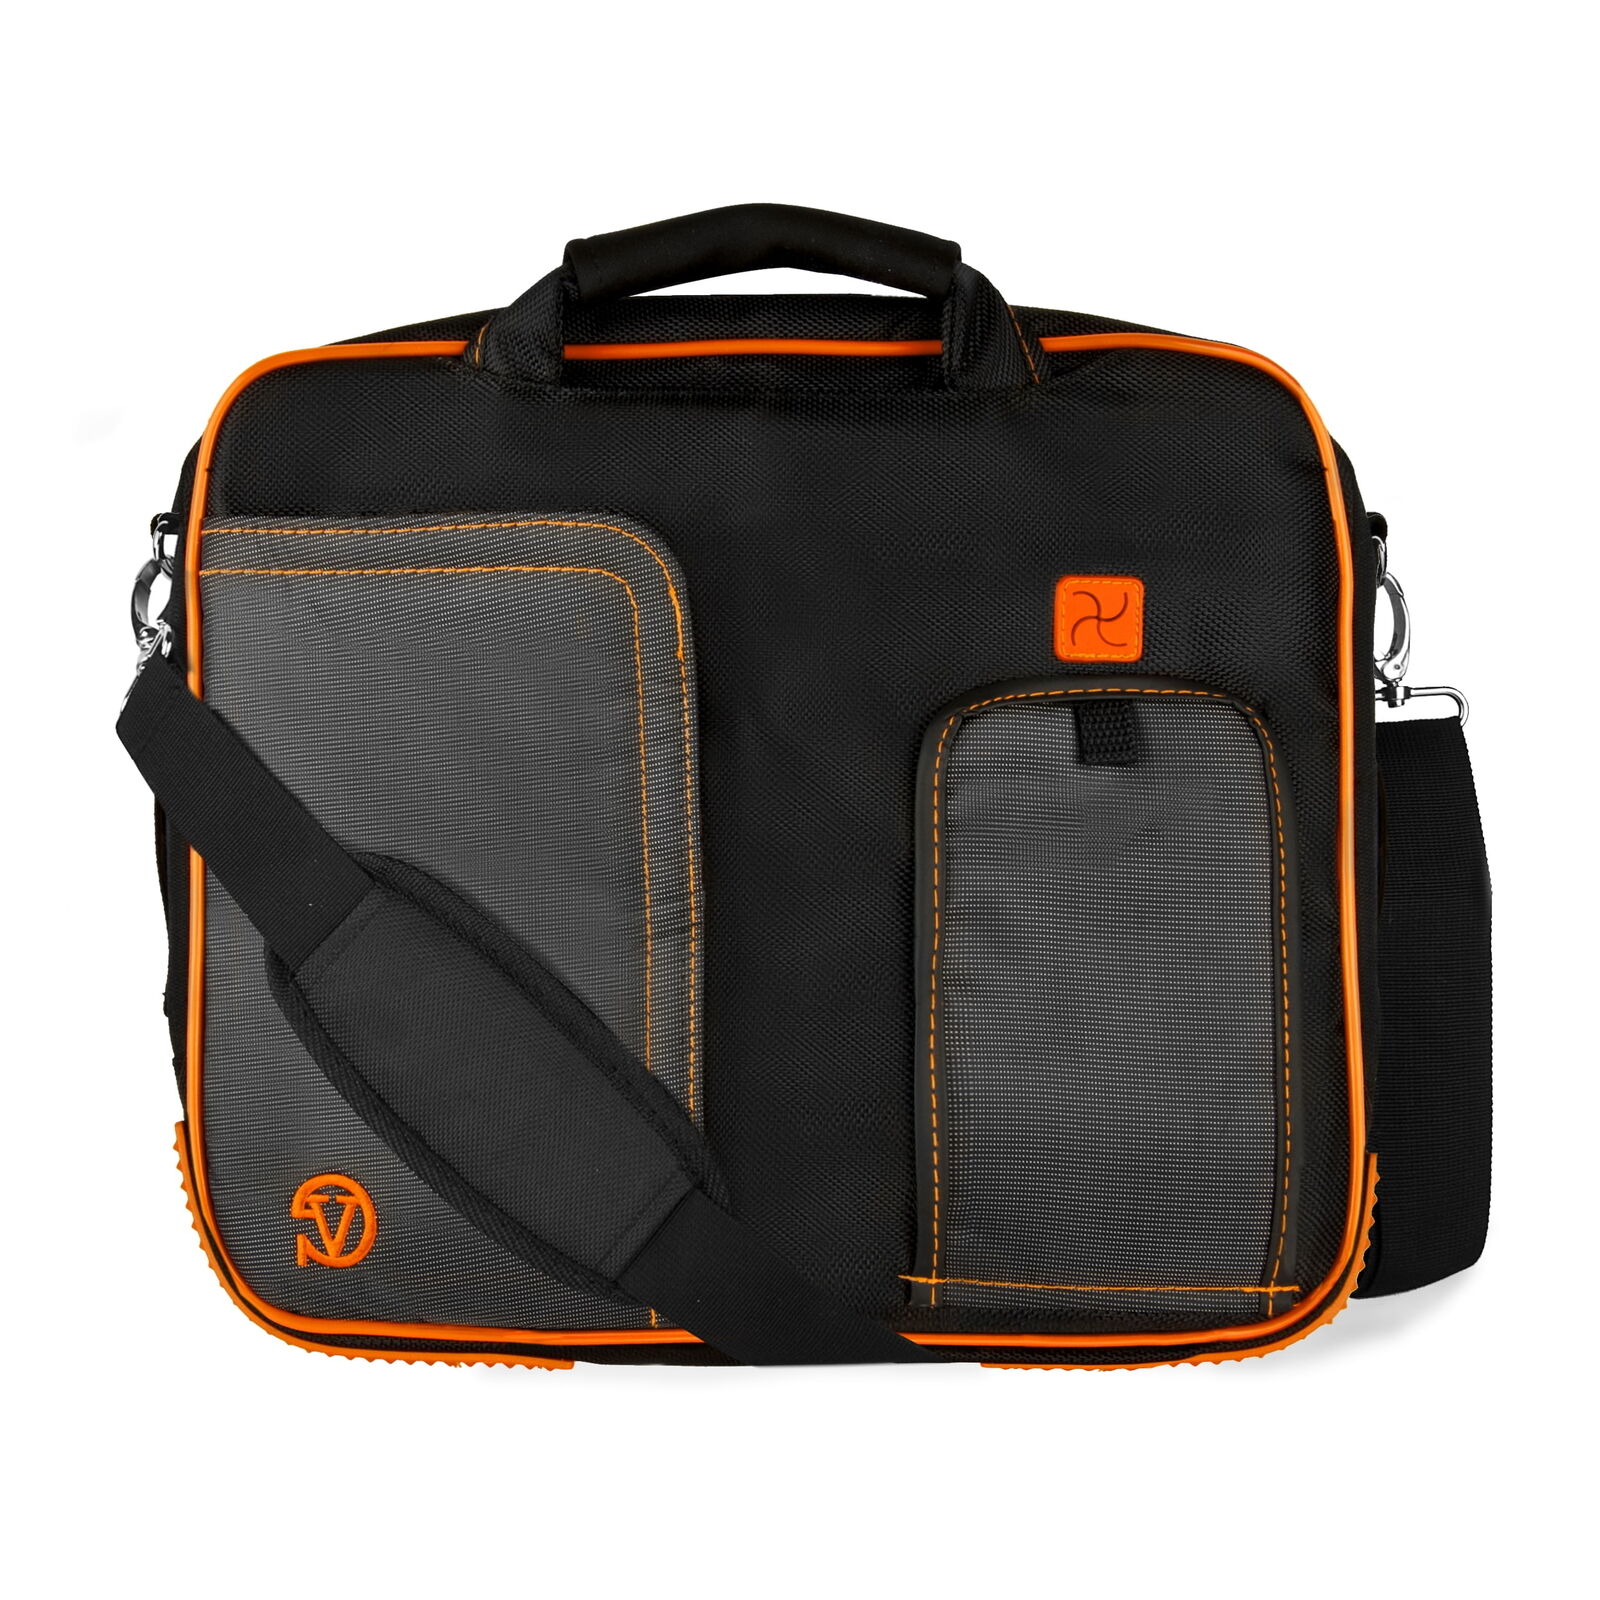 Messenger BaG Laptop Shoulder Bag Briefcase for Men Women Work Travel School